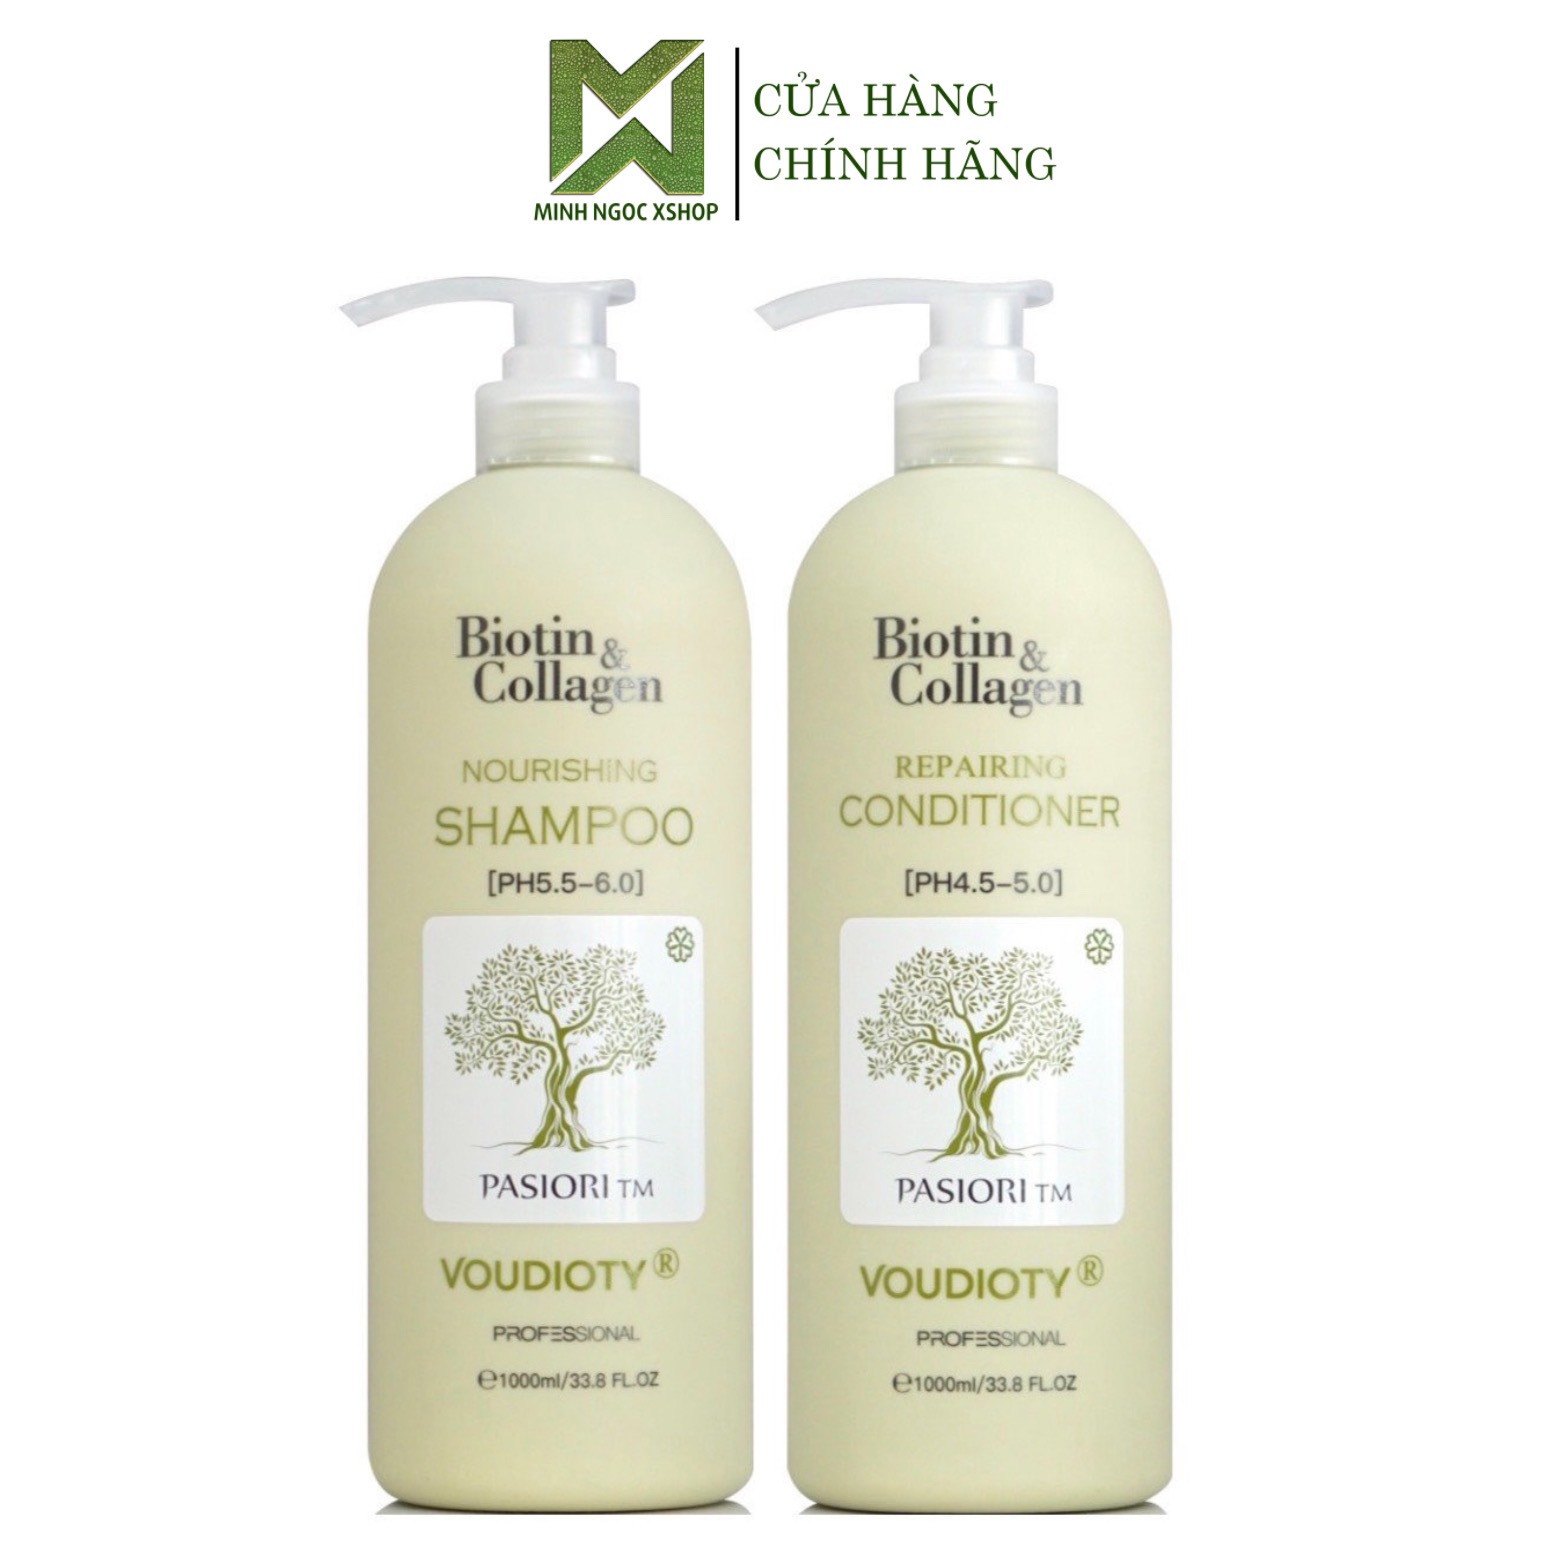 Dầu gội xả cho tóc dầu Biotin Collagen Voudioty xanh lá 1000ML